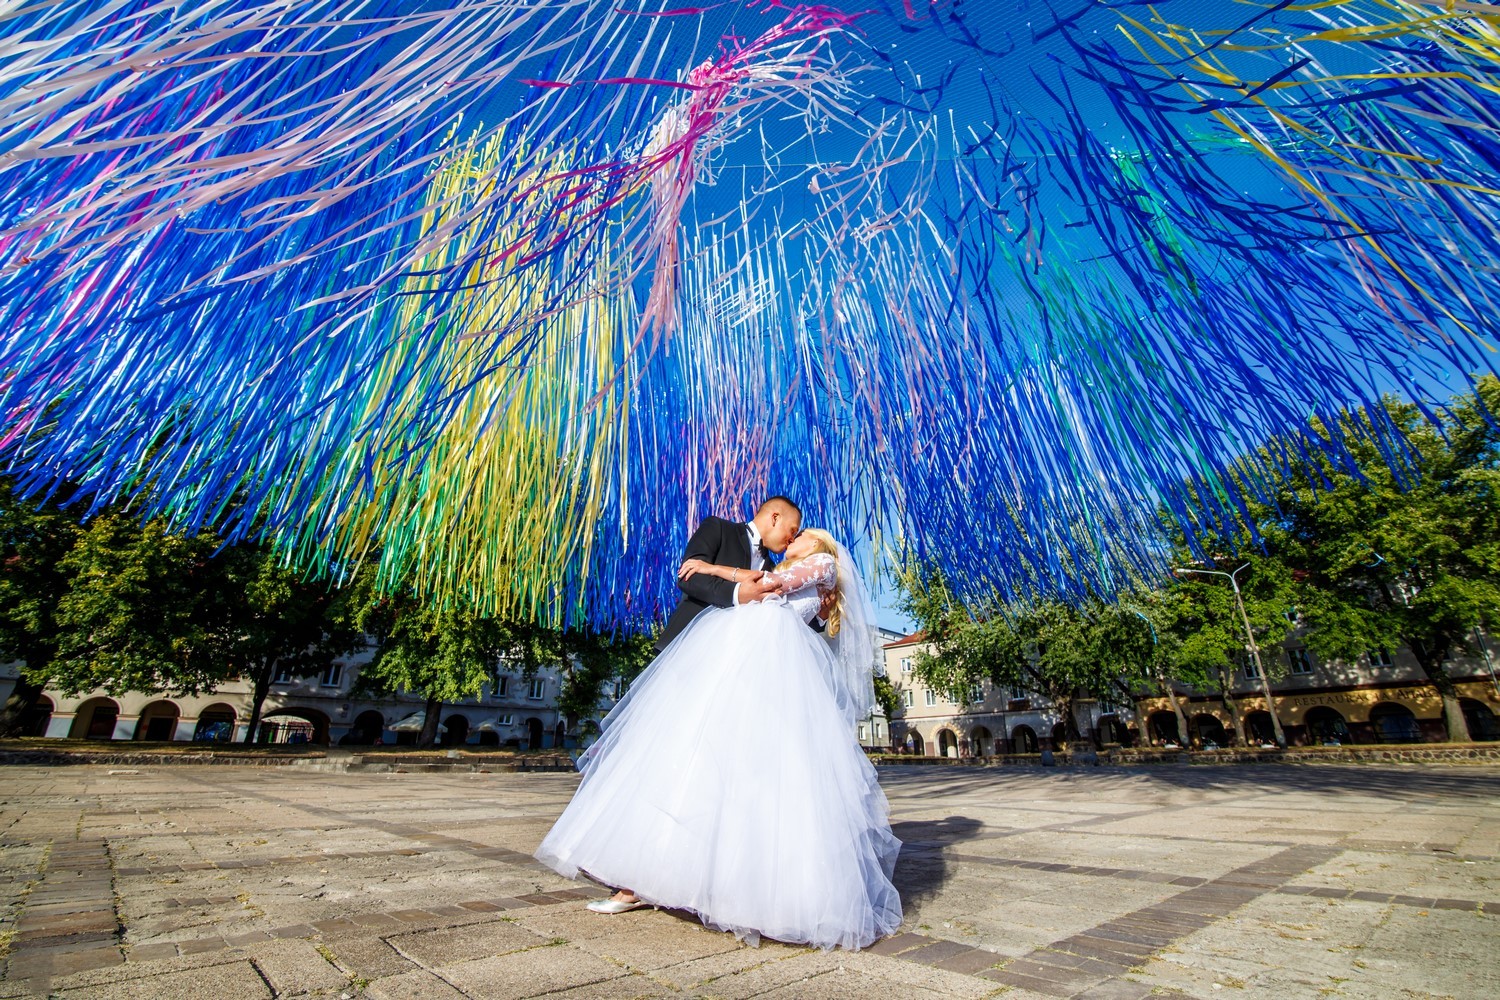 fotograf lodz michalskibe portfolio zdjecia slubne inspiracje wesele plener slubny sesja slubna